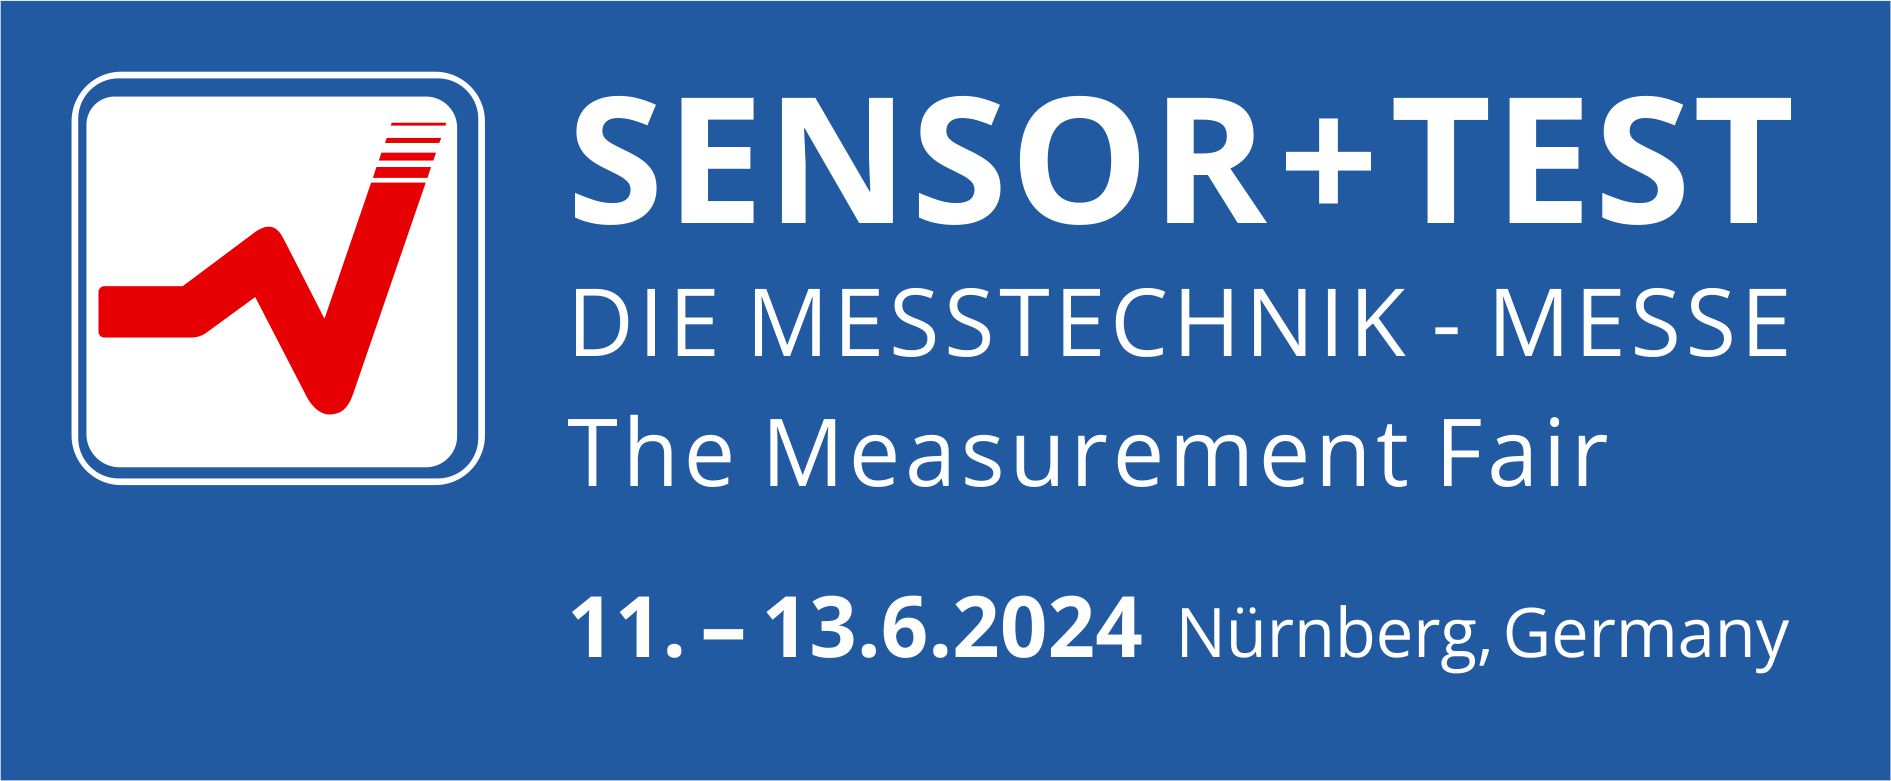 Das Fraunhofer IZM auf der Sensor+Test 2024